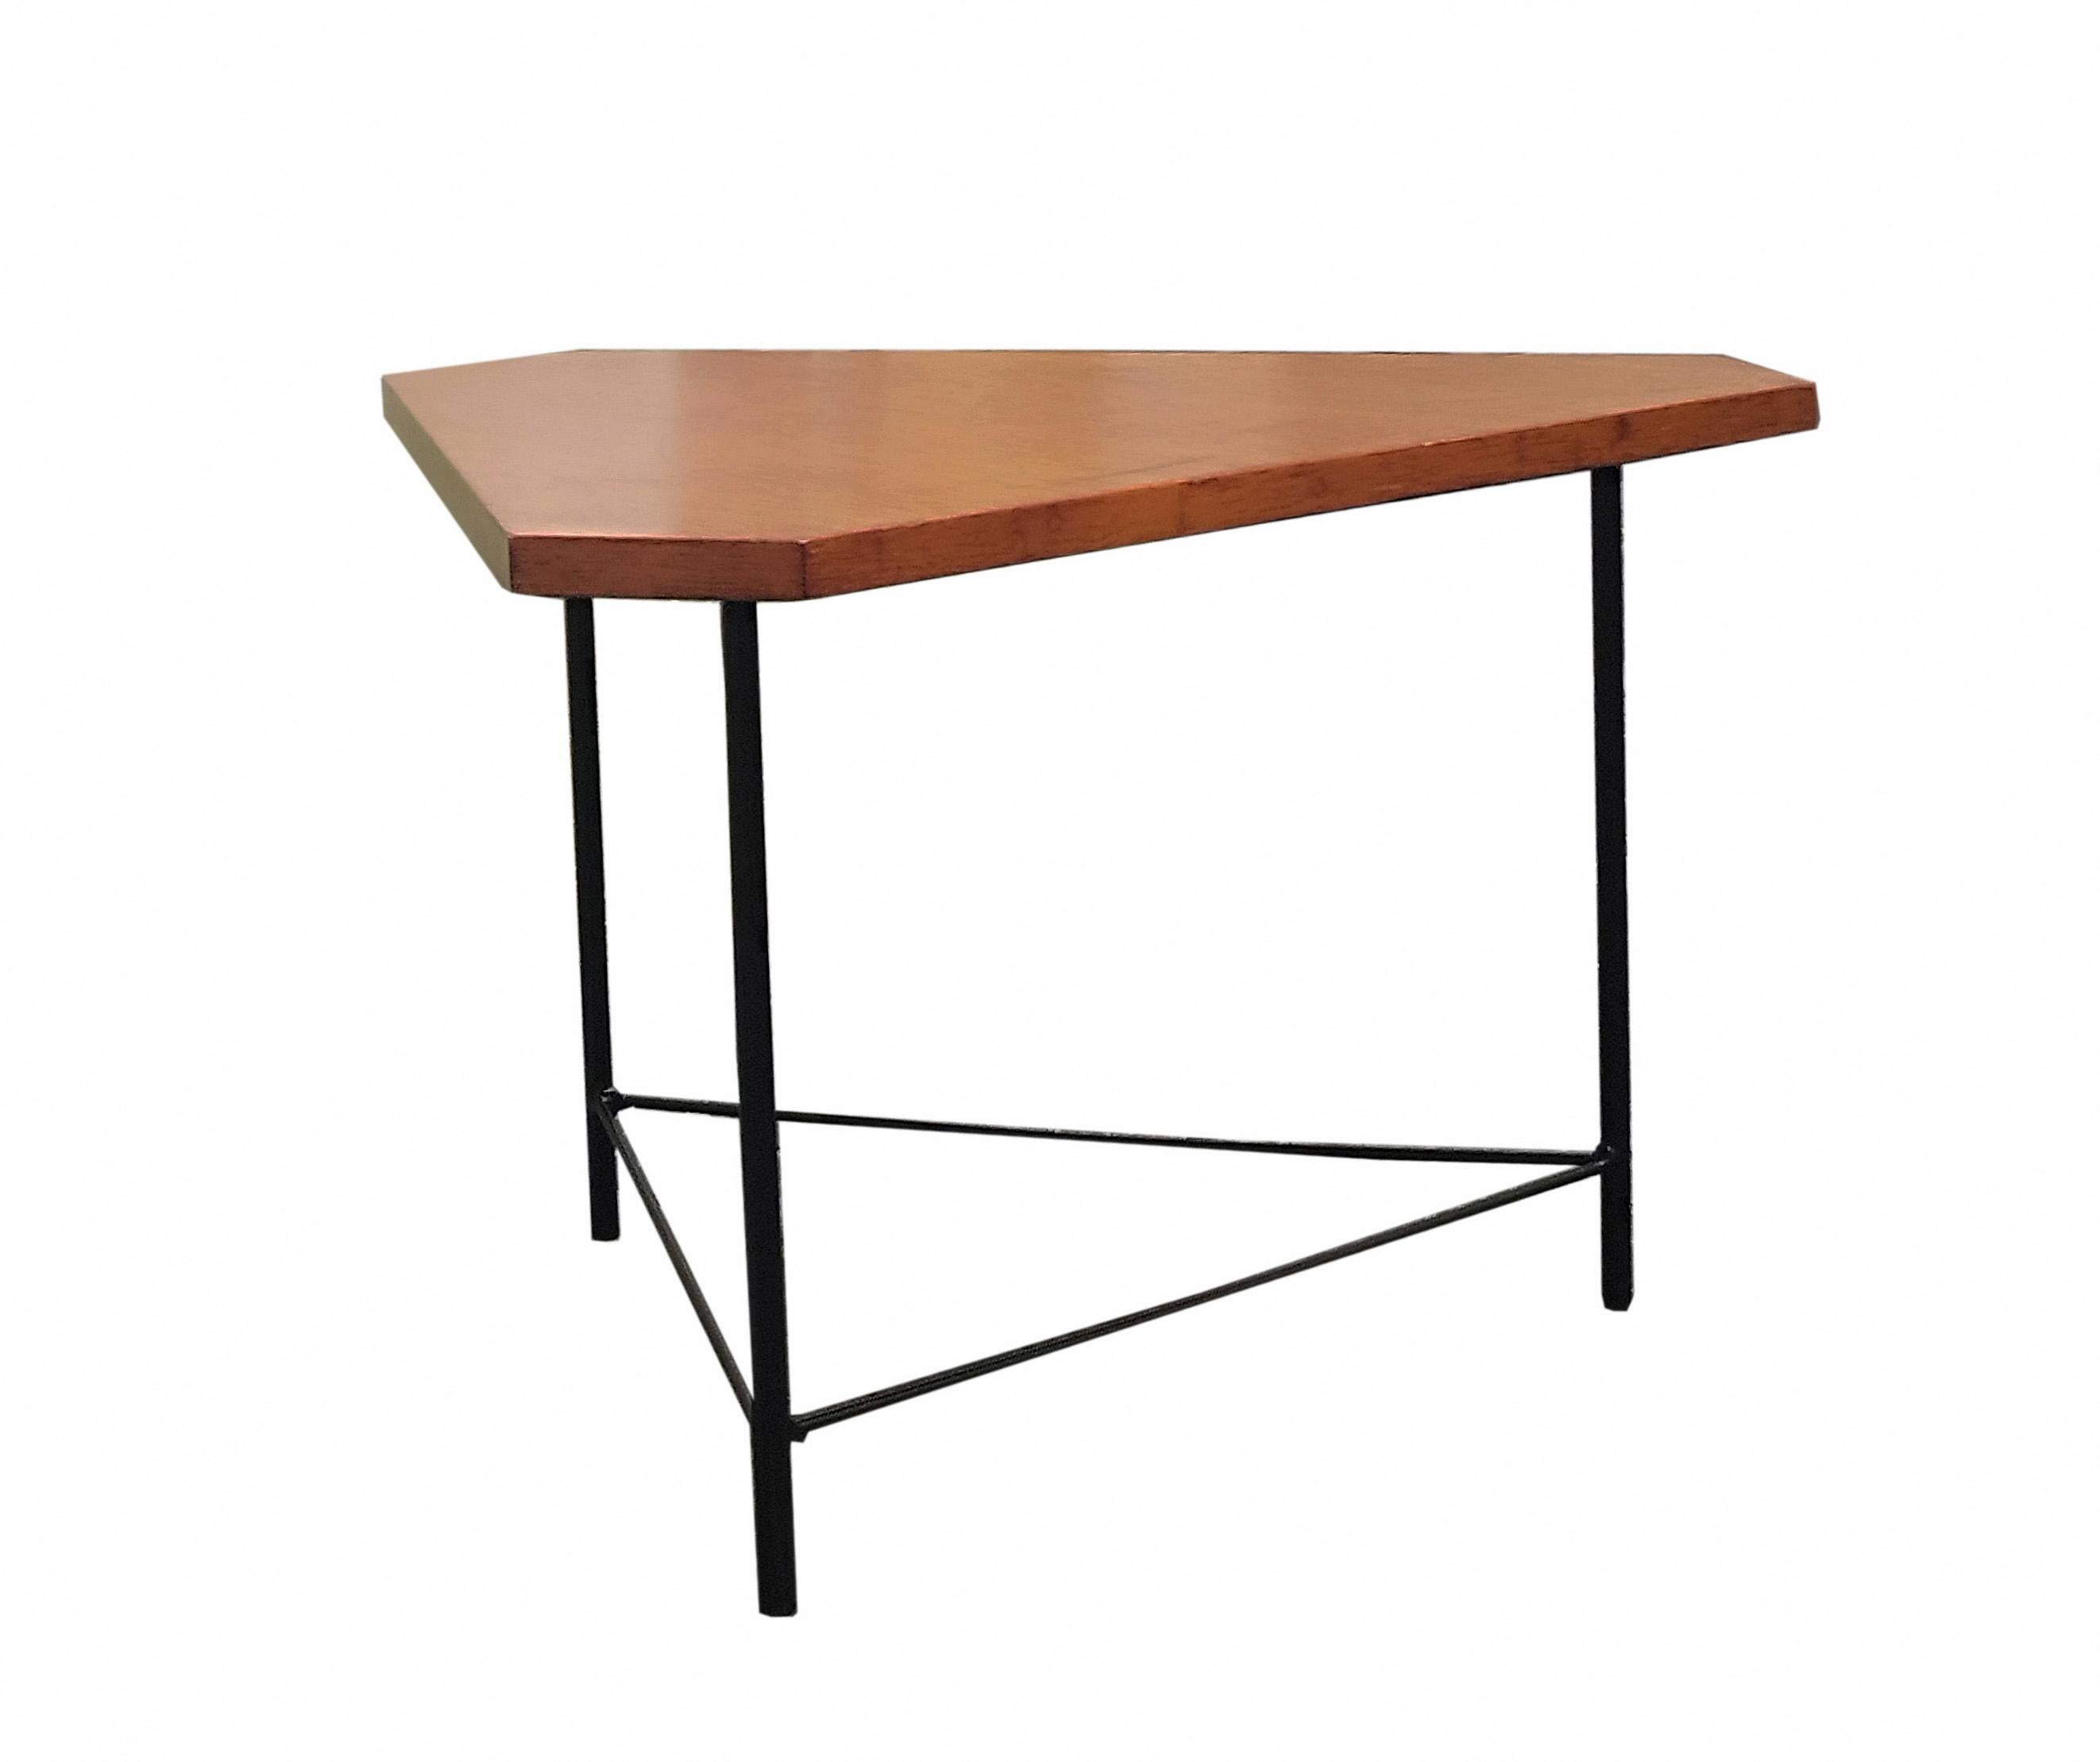 Table basse avec structure en métal laqué et plateau en bois. Étiquette originale.
Prod. ISA, Italie, vers 1950.